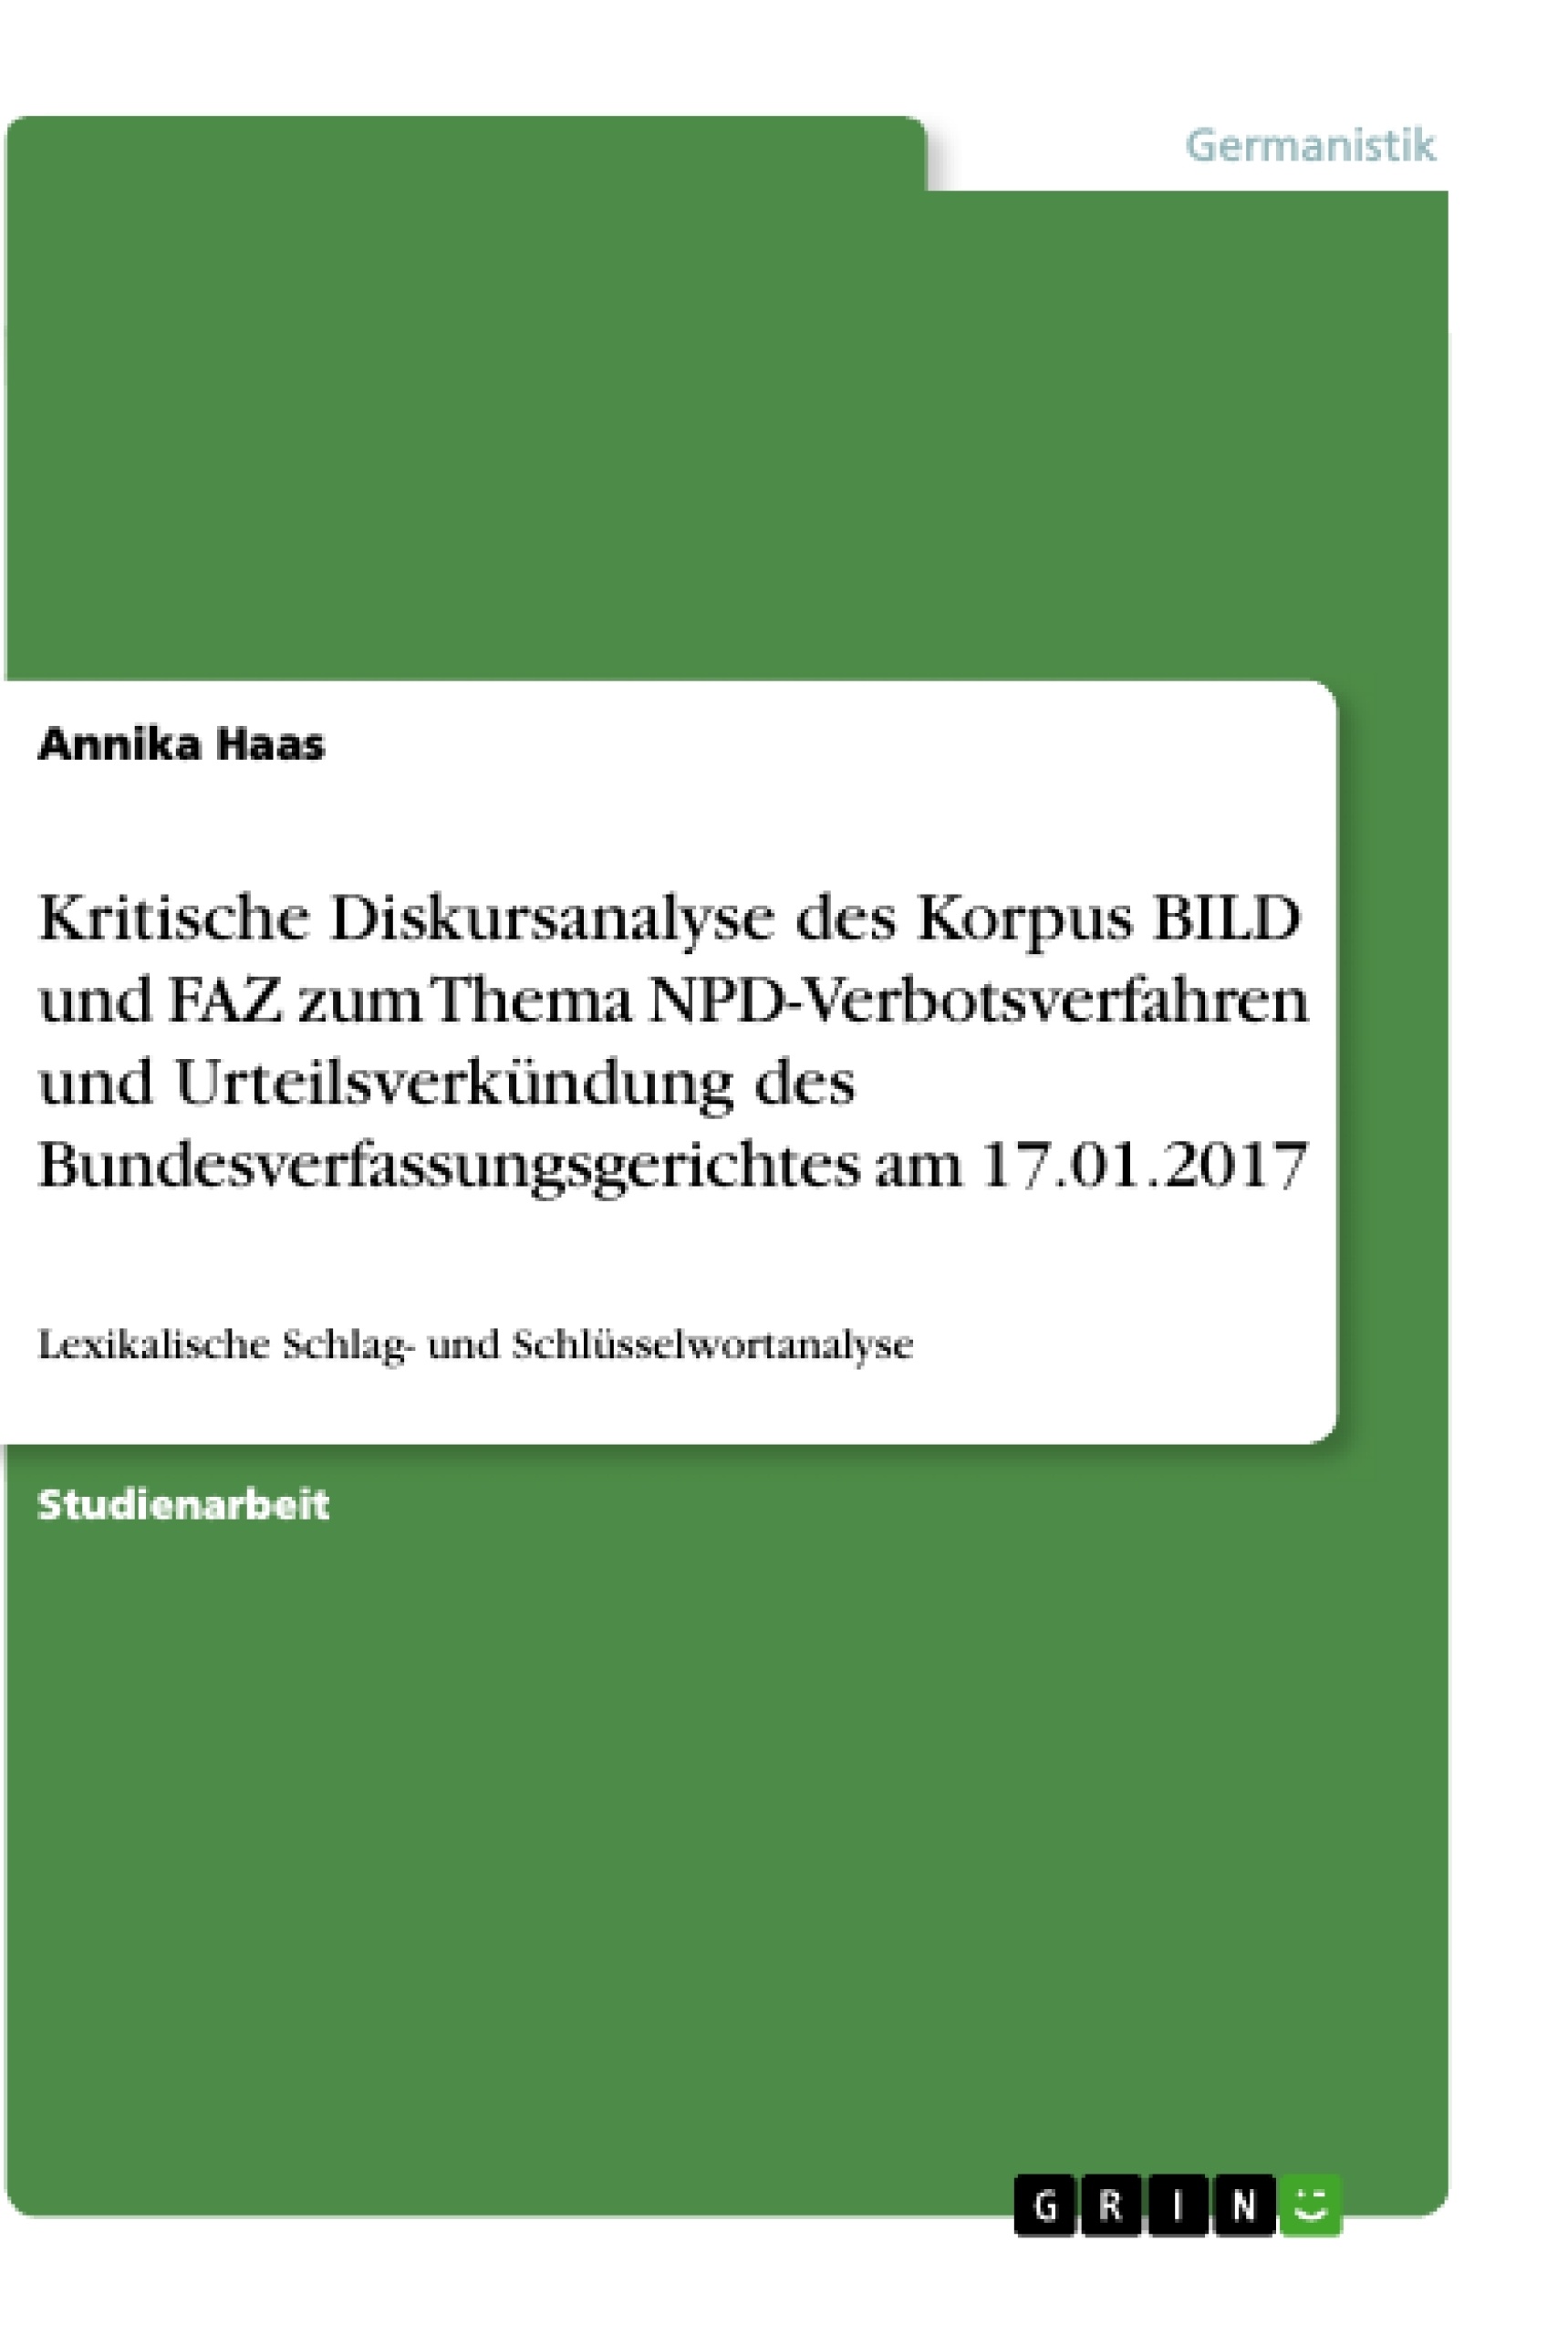 Titre: Kritische Diskursanalyse des Korpus BILD und FAZ zum Thema NPD-Verbotsverfahren und Urteilsverkündung des Bundesverfassungsgerichtes am 17.01.2017